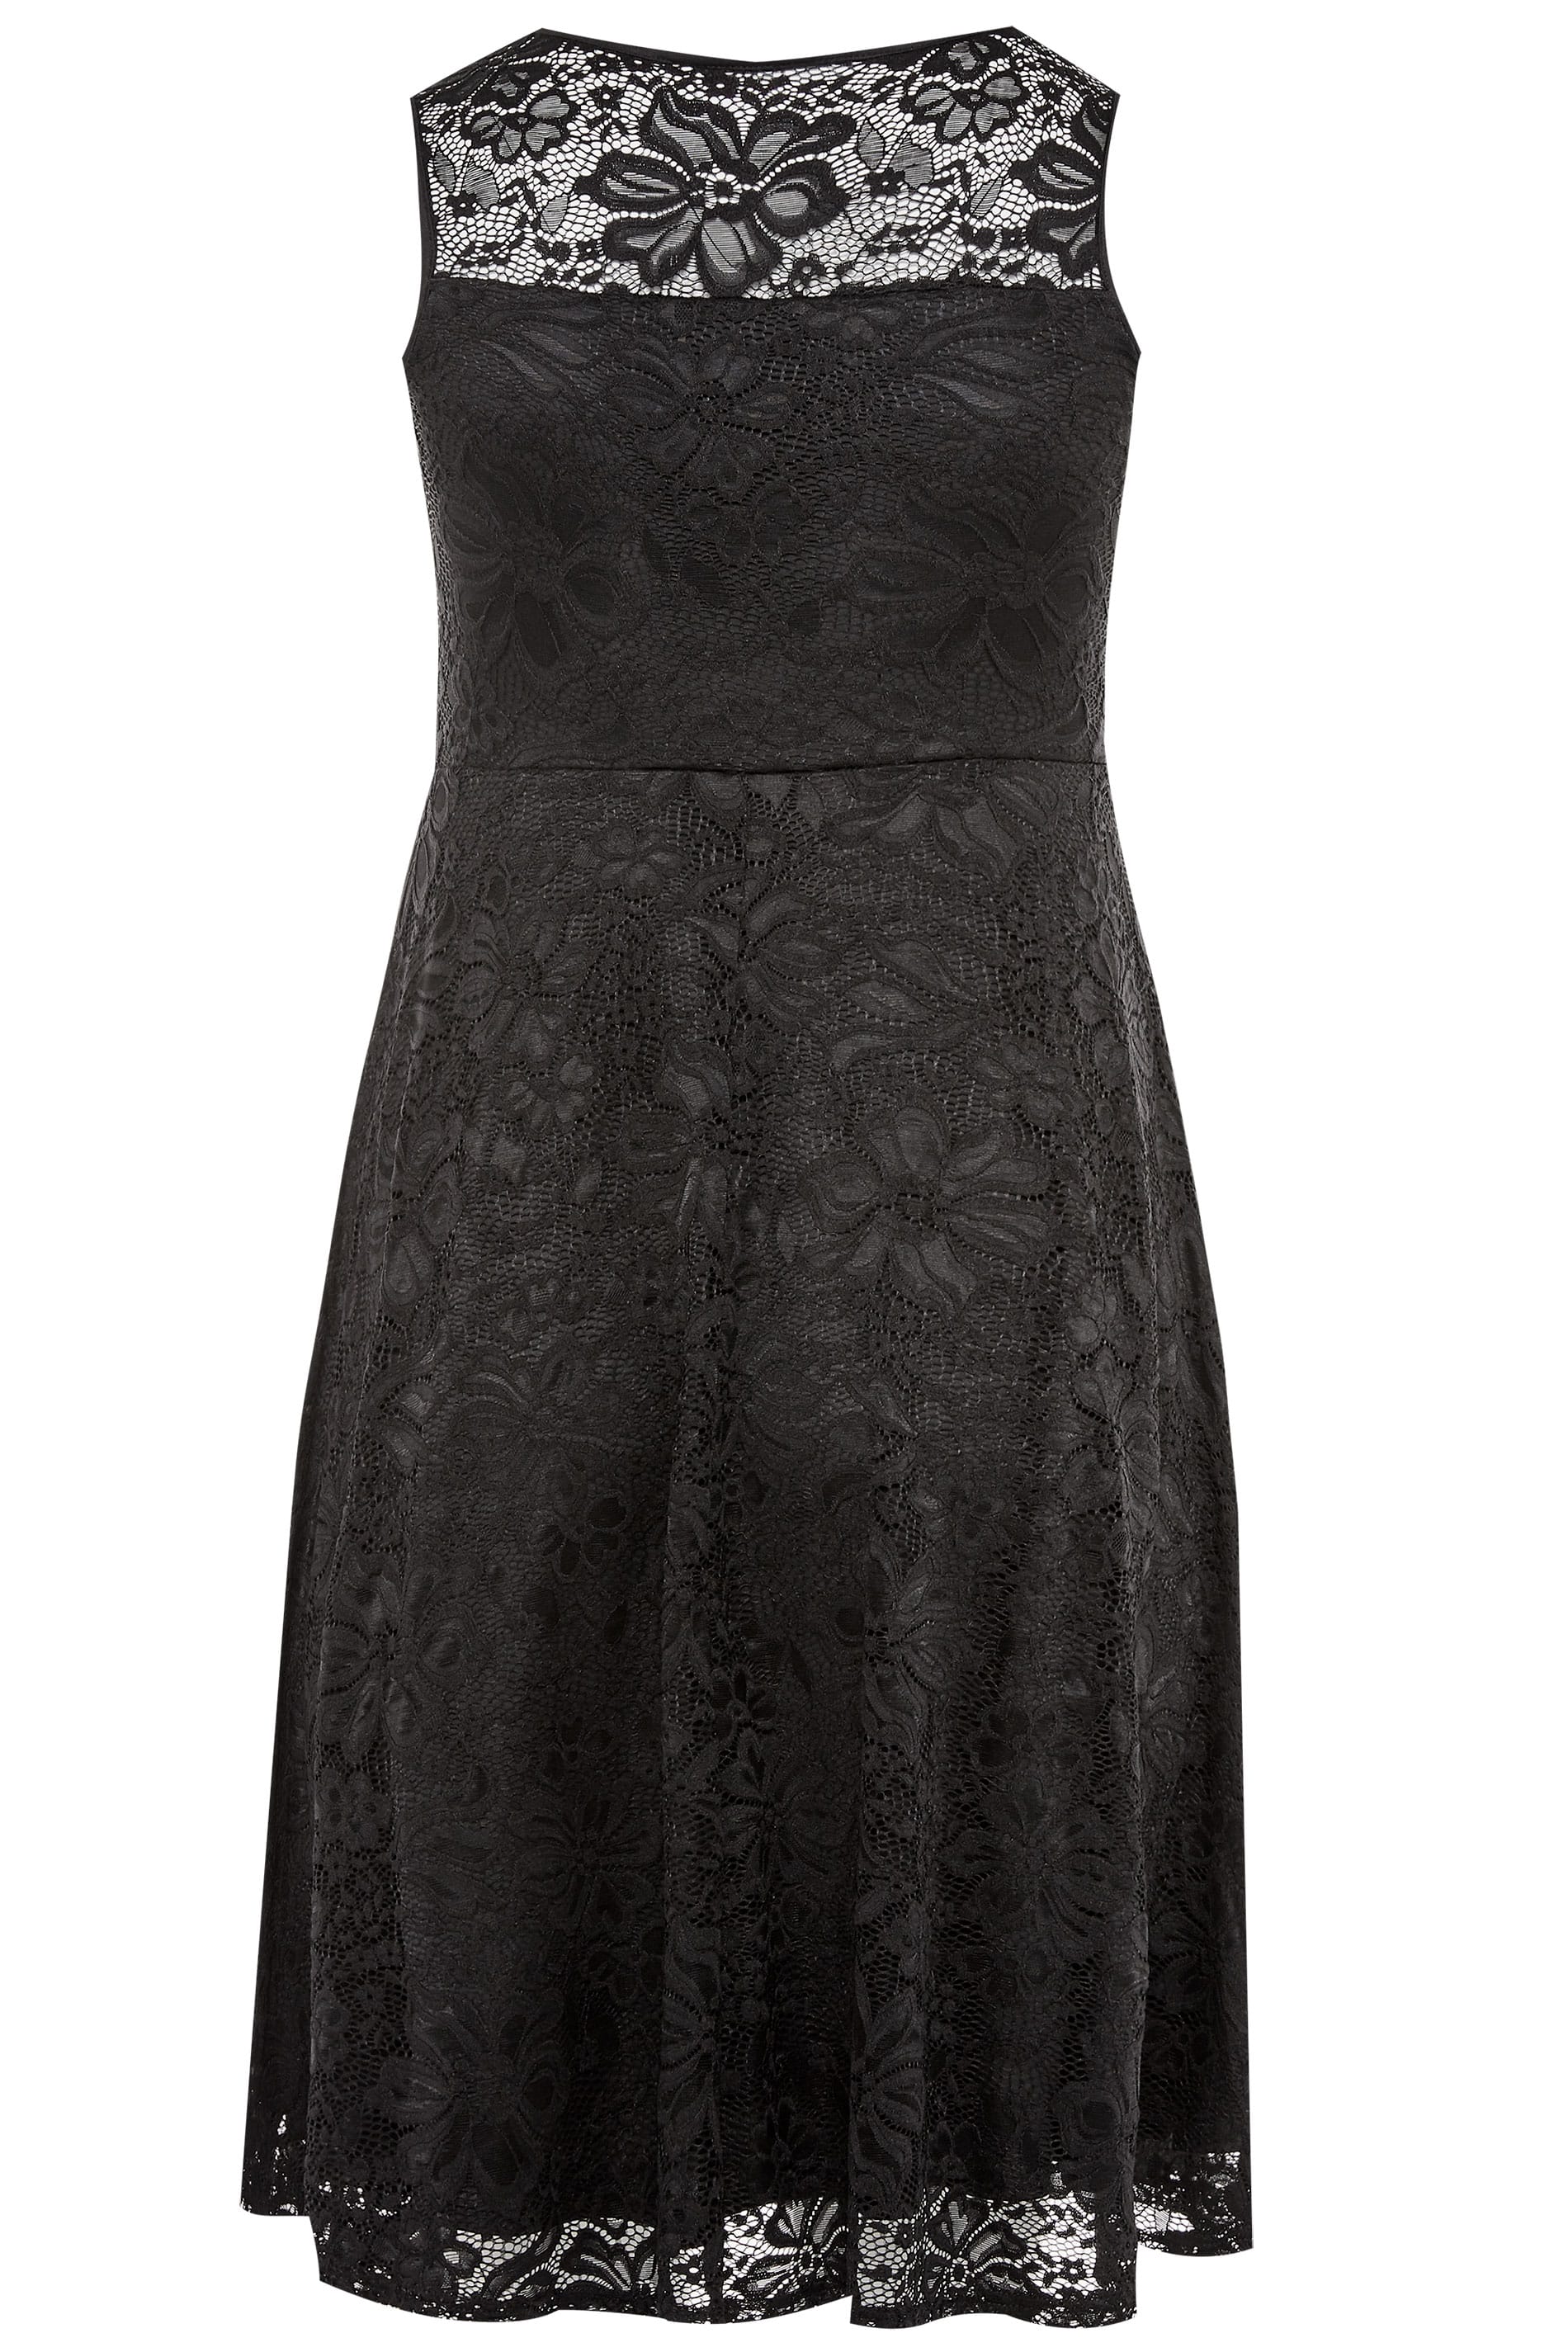 Black Sleeveless Lace Dress | Yours Clothing